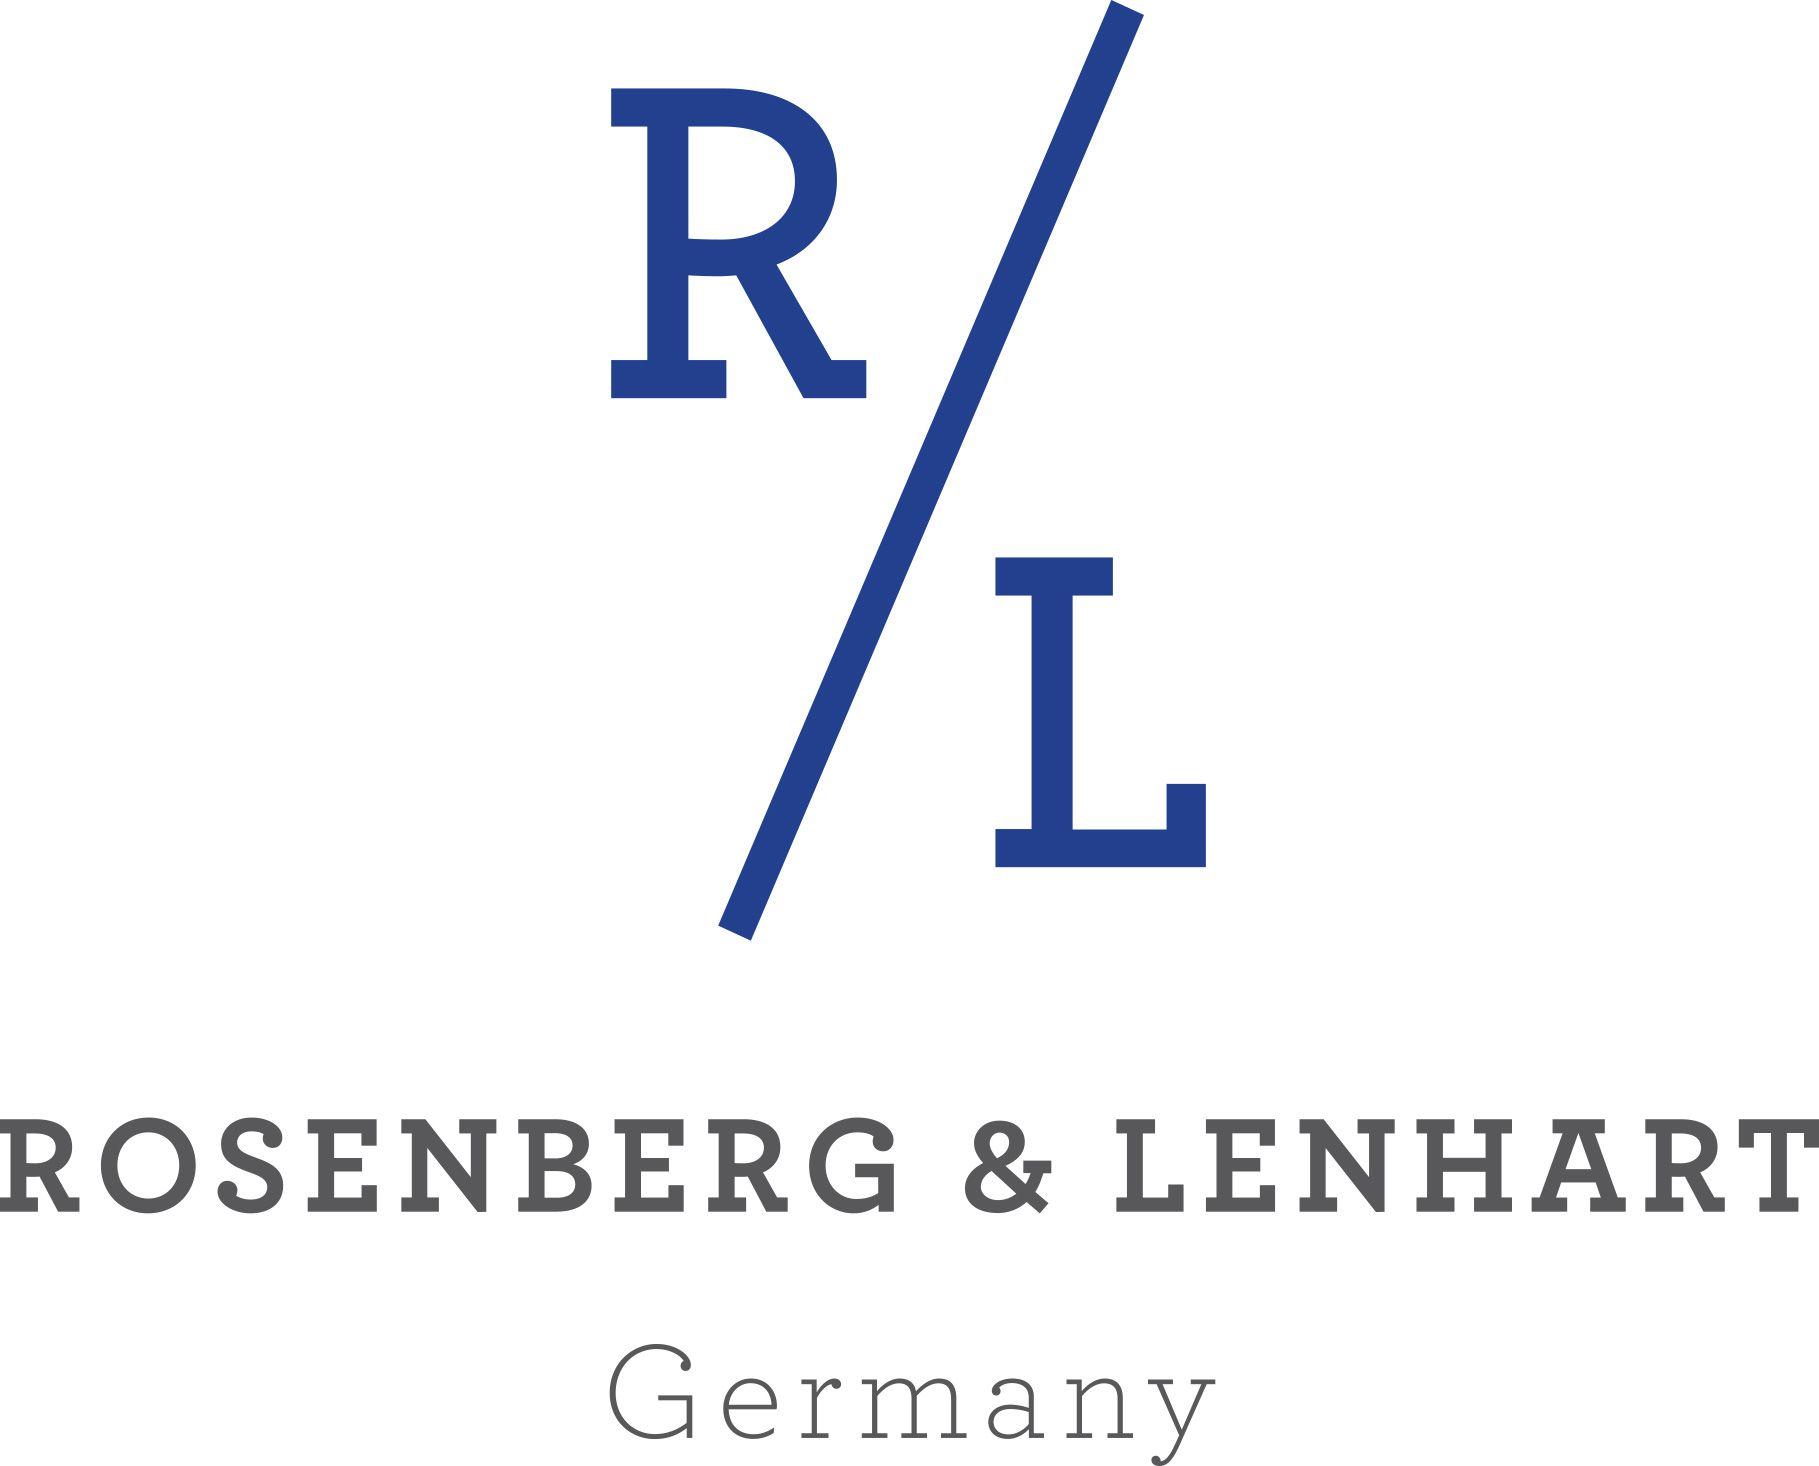 Lenhart Logo - R&L ROSENBERG & LENHART - The One Milano